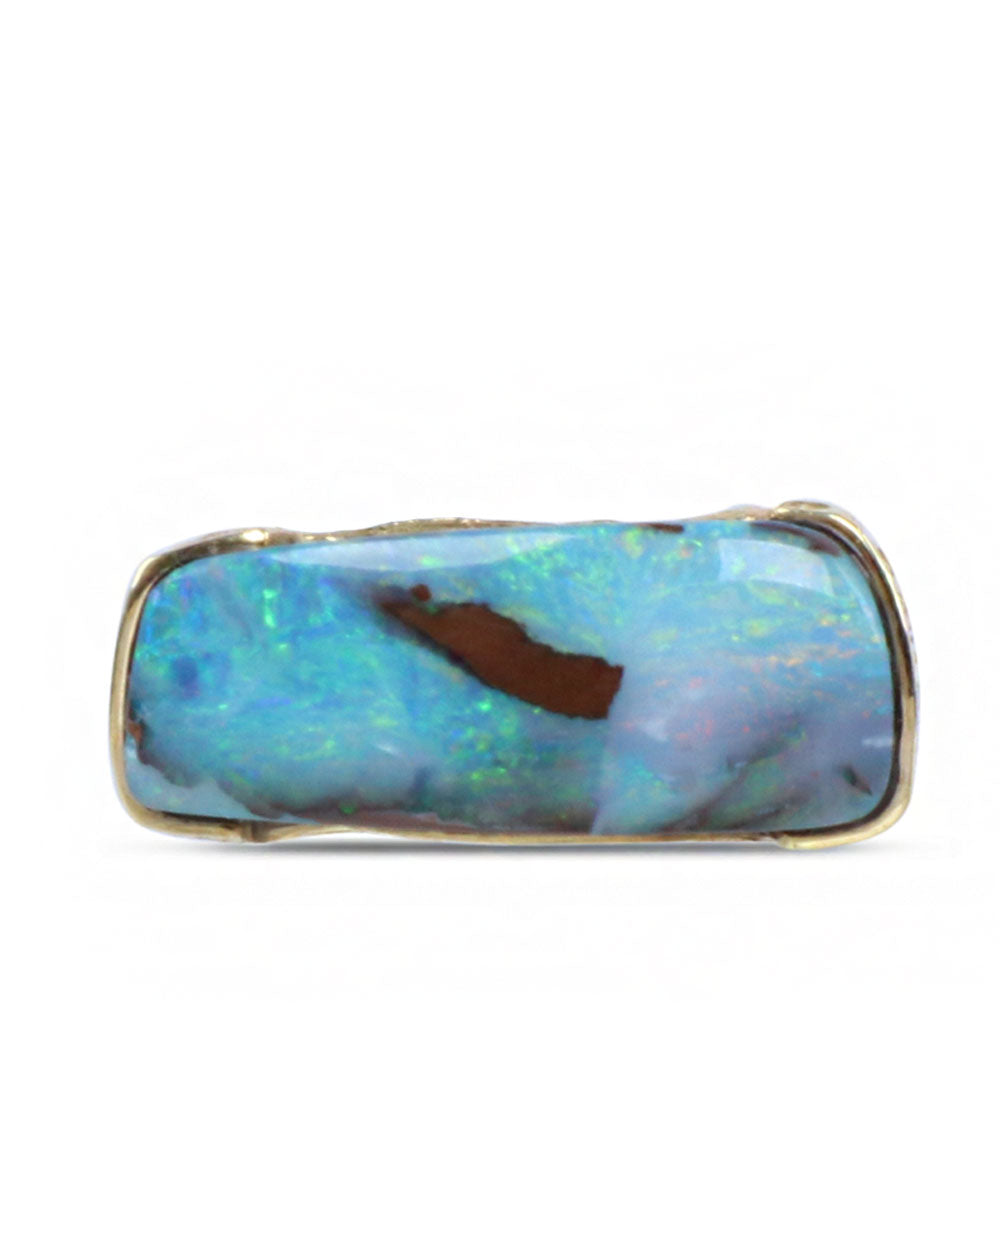 XL Boulder Opal Twist Ring